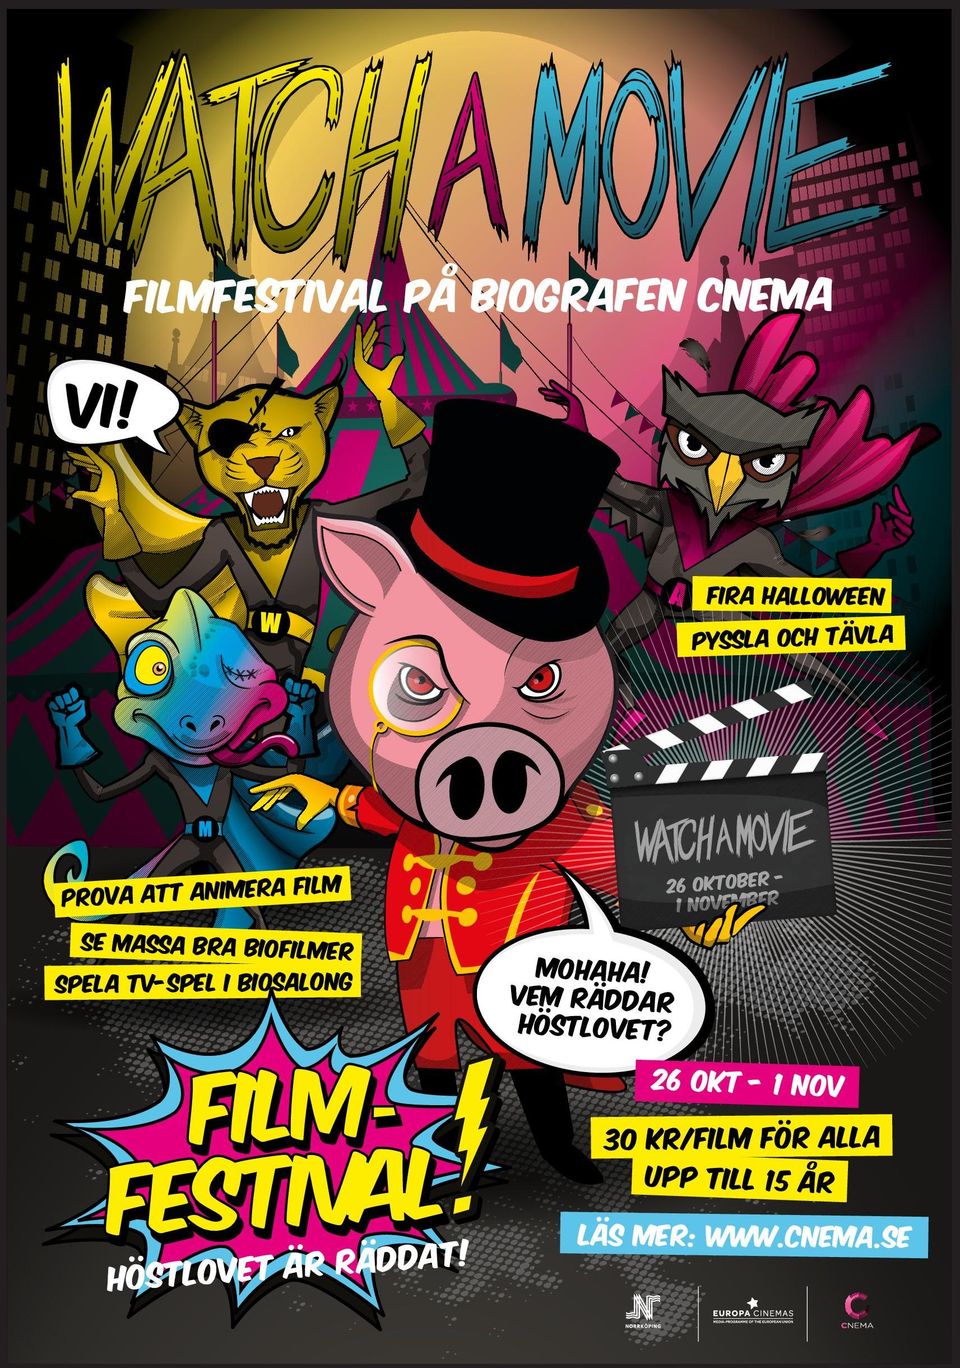 biofilmer Spela TV-spel i biosalong 26 oktober 1 november MOHAHA!